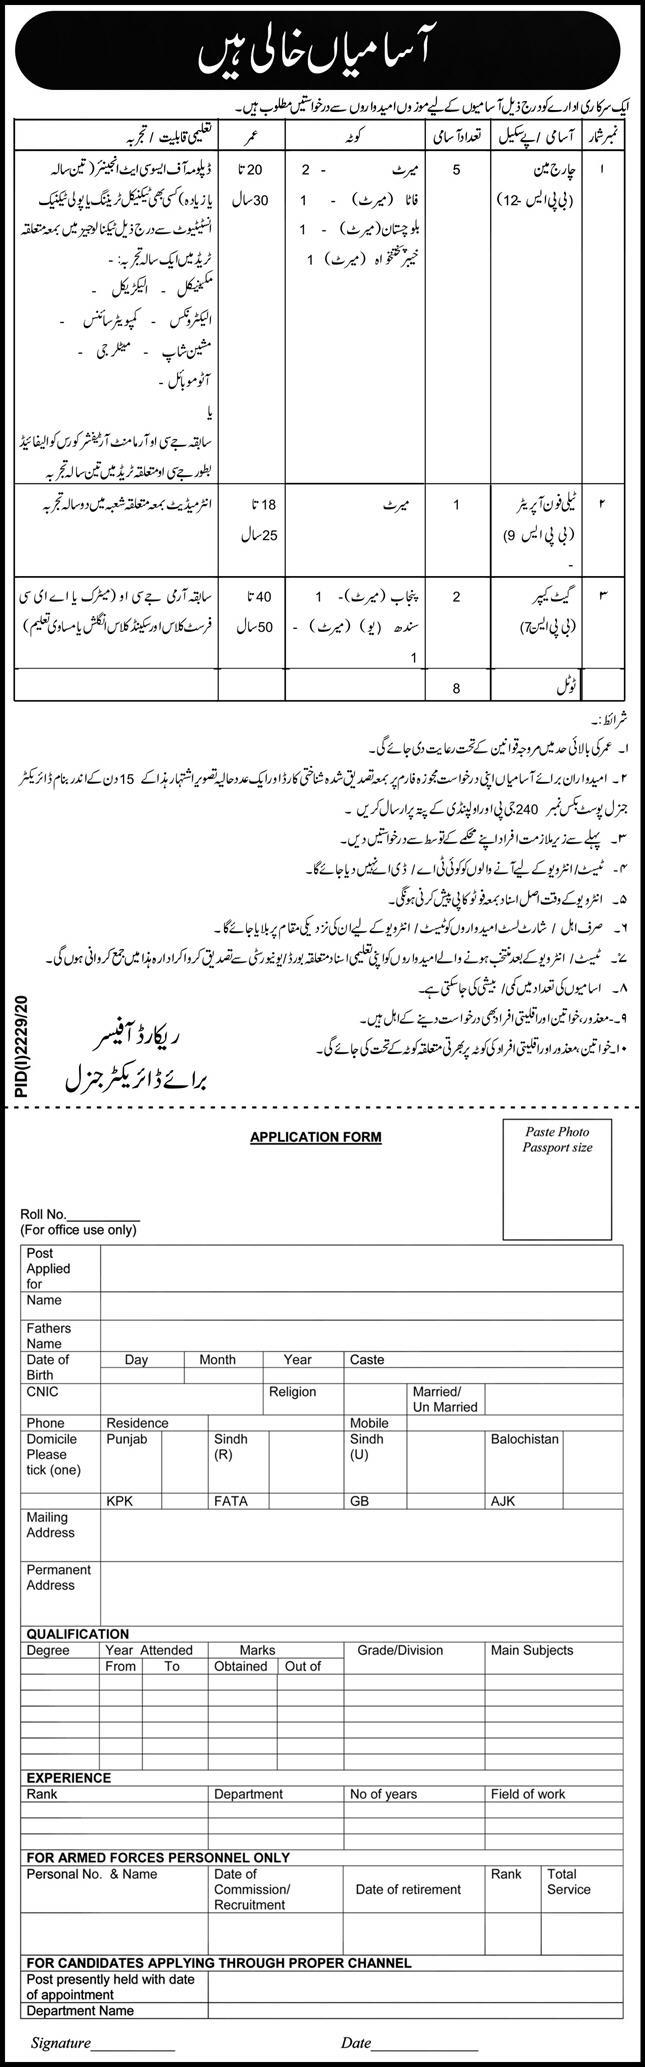 PO Box 240 Rawalpindi Federal Govt Organization Jobs 2020